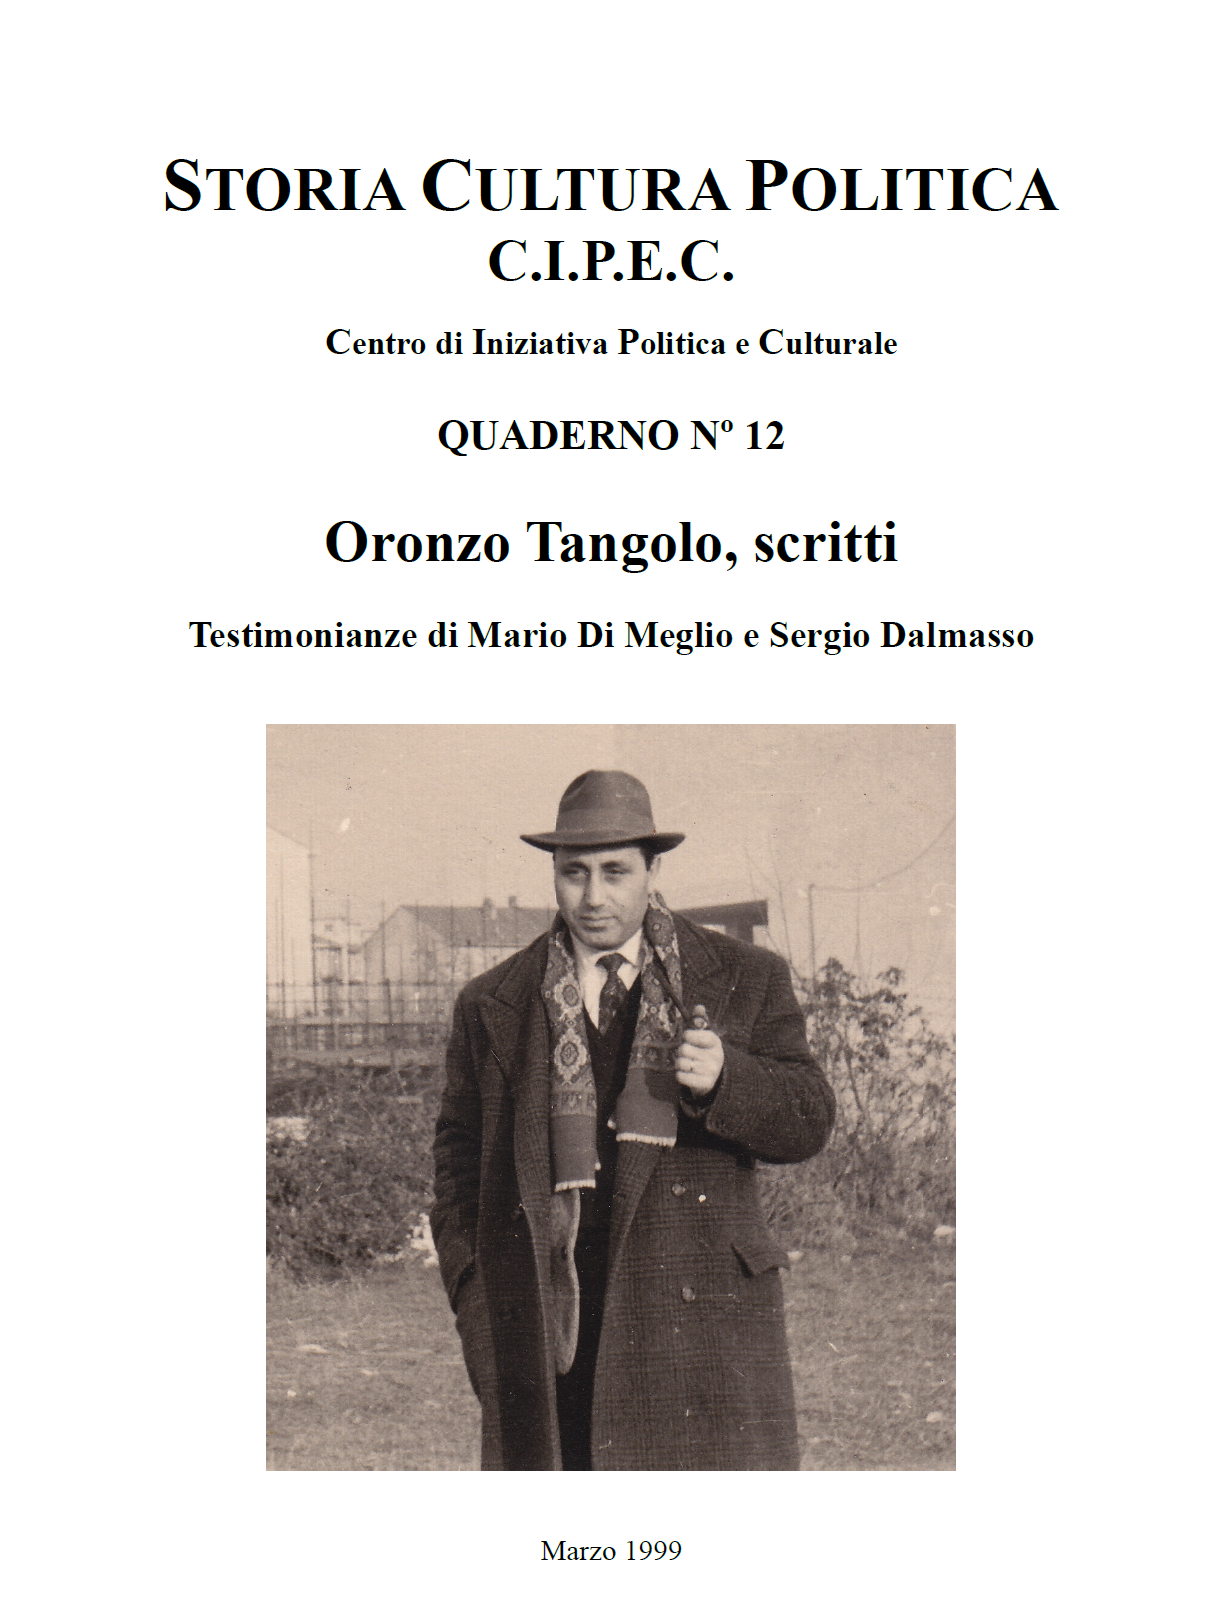 Quaderno CIPEC N. 12, Oronzo Tangolo, scritti